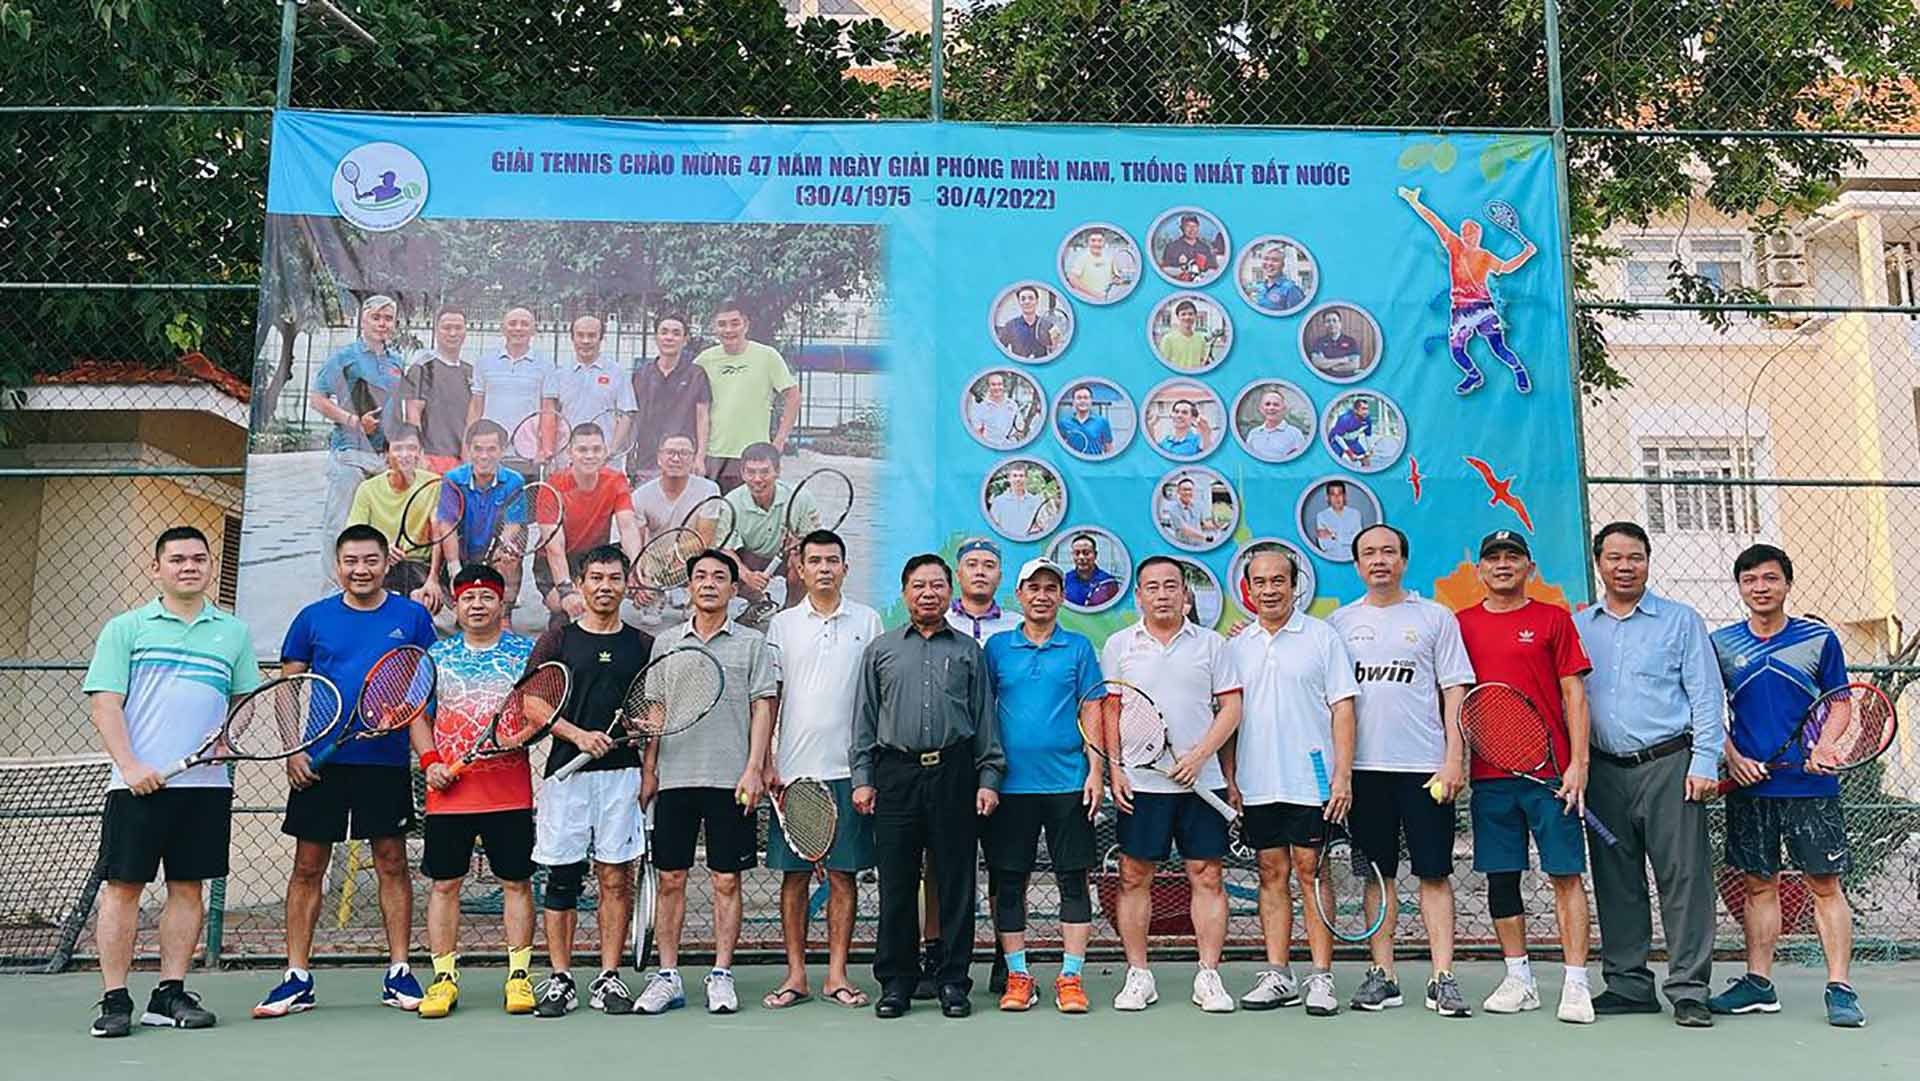 Câu lạc bộ tennis Việt Nam tại Campuchia đã tổ chức Giải tennis chào mừng ngày giải phóng miền Nam thống nhất đất nước.